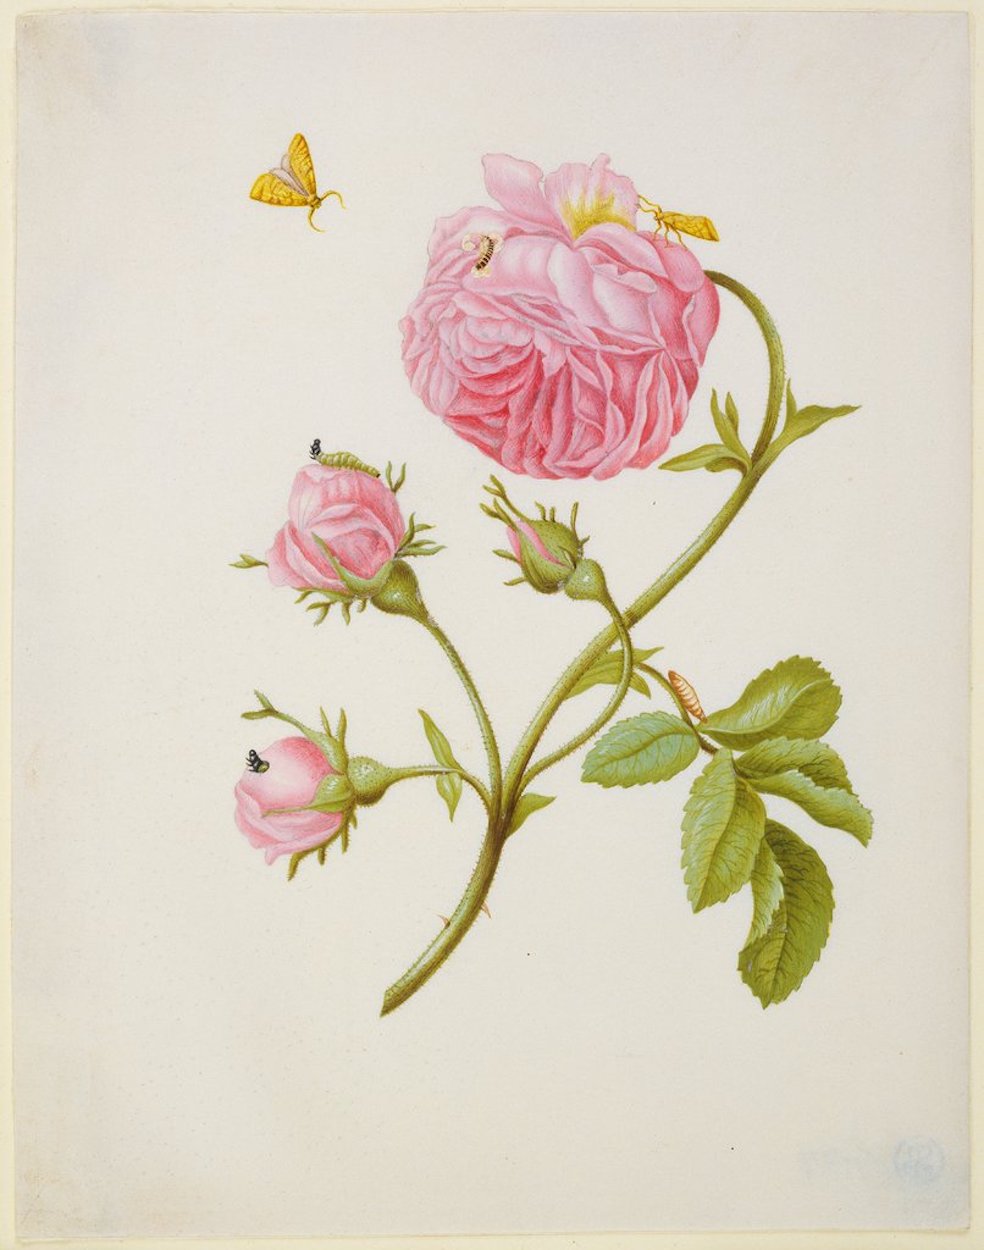 Τριαντάφυλλο με μεταμόρφωση σκαθαριού leaf roller και μια κολλημένη προνύμφη σκαθαριού by Maria Sibylla Merian - μετά το 1679 - 18.8 x 14.6 εκ 